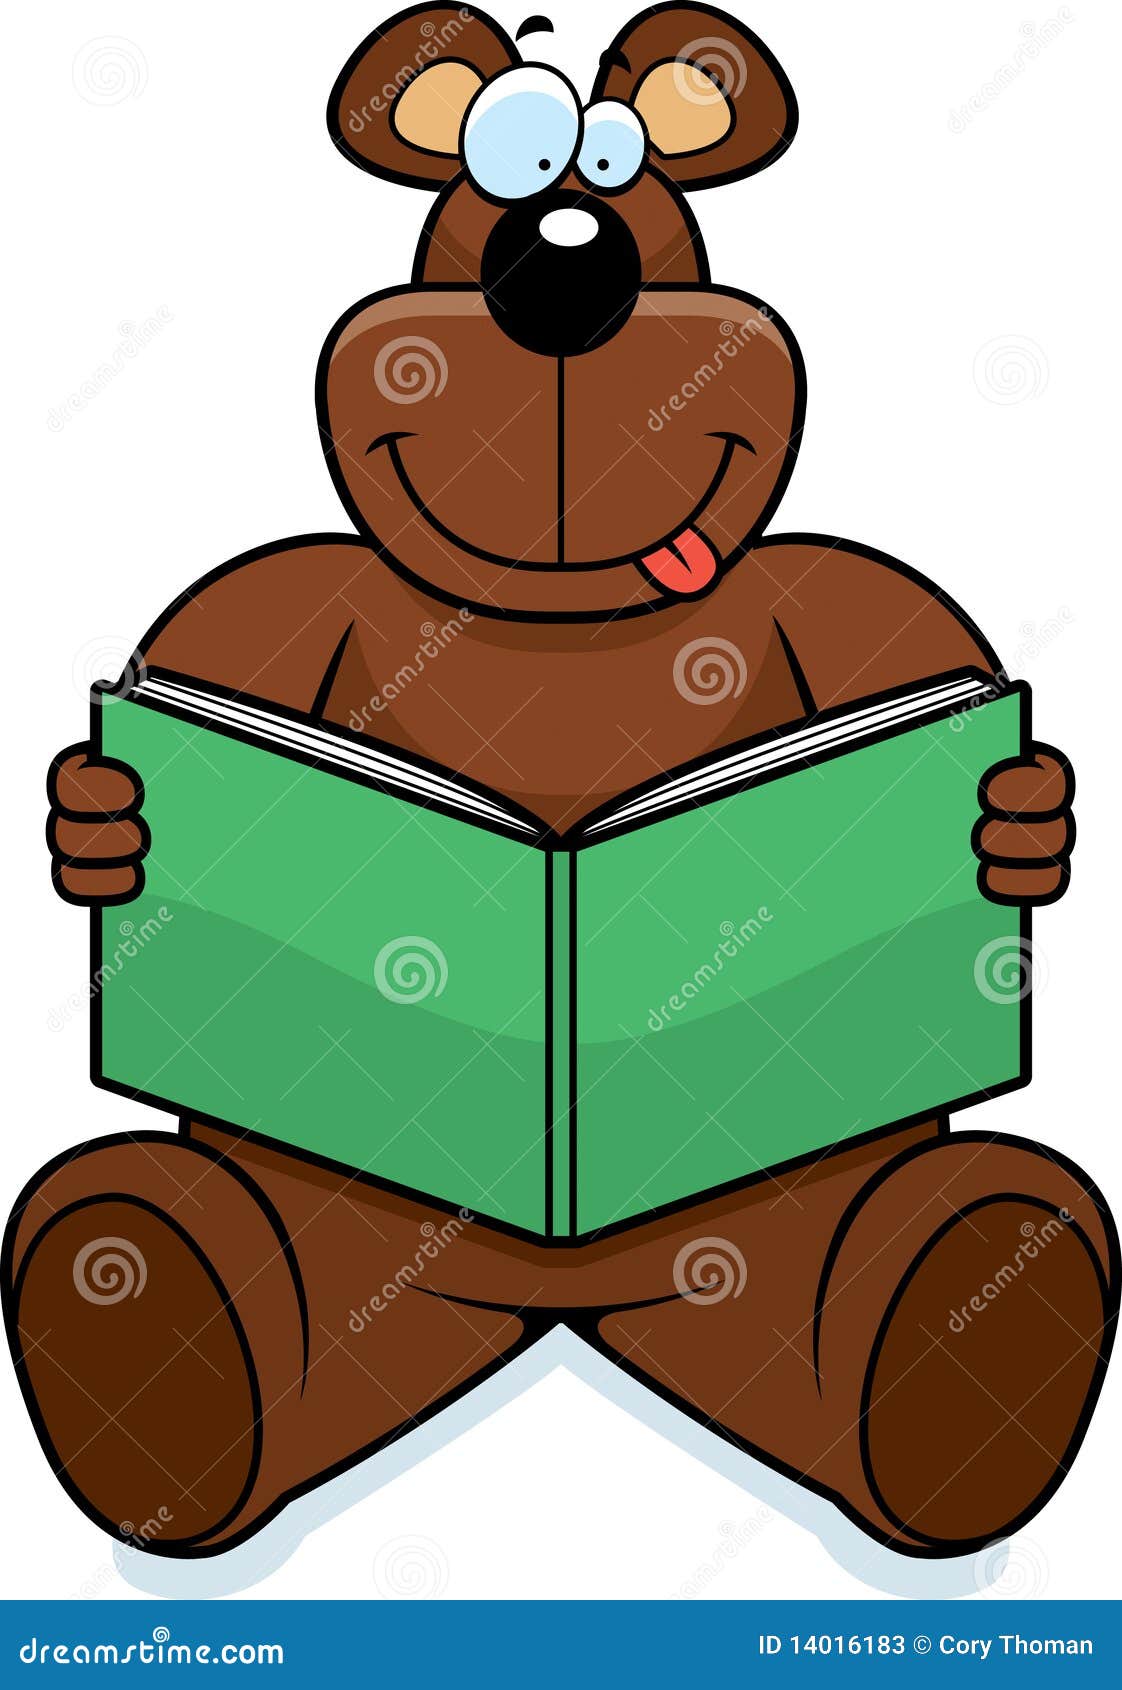 teddy bear reading clipart - photo #50